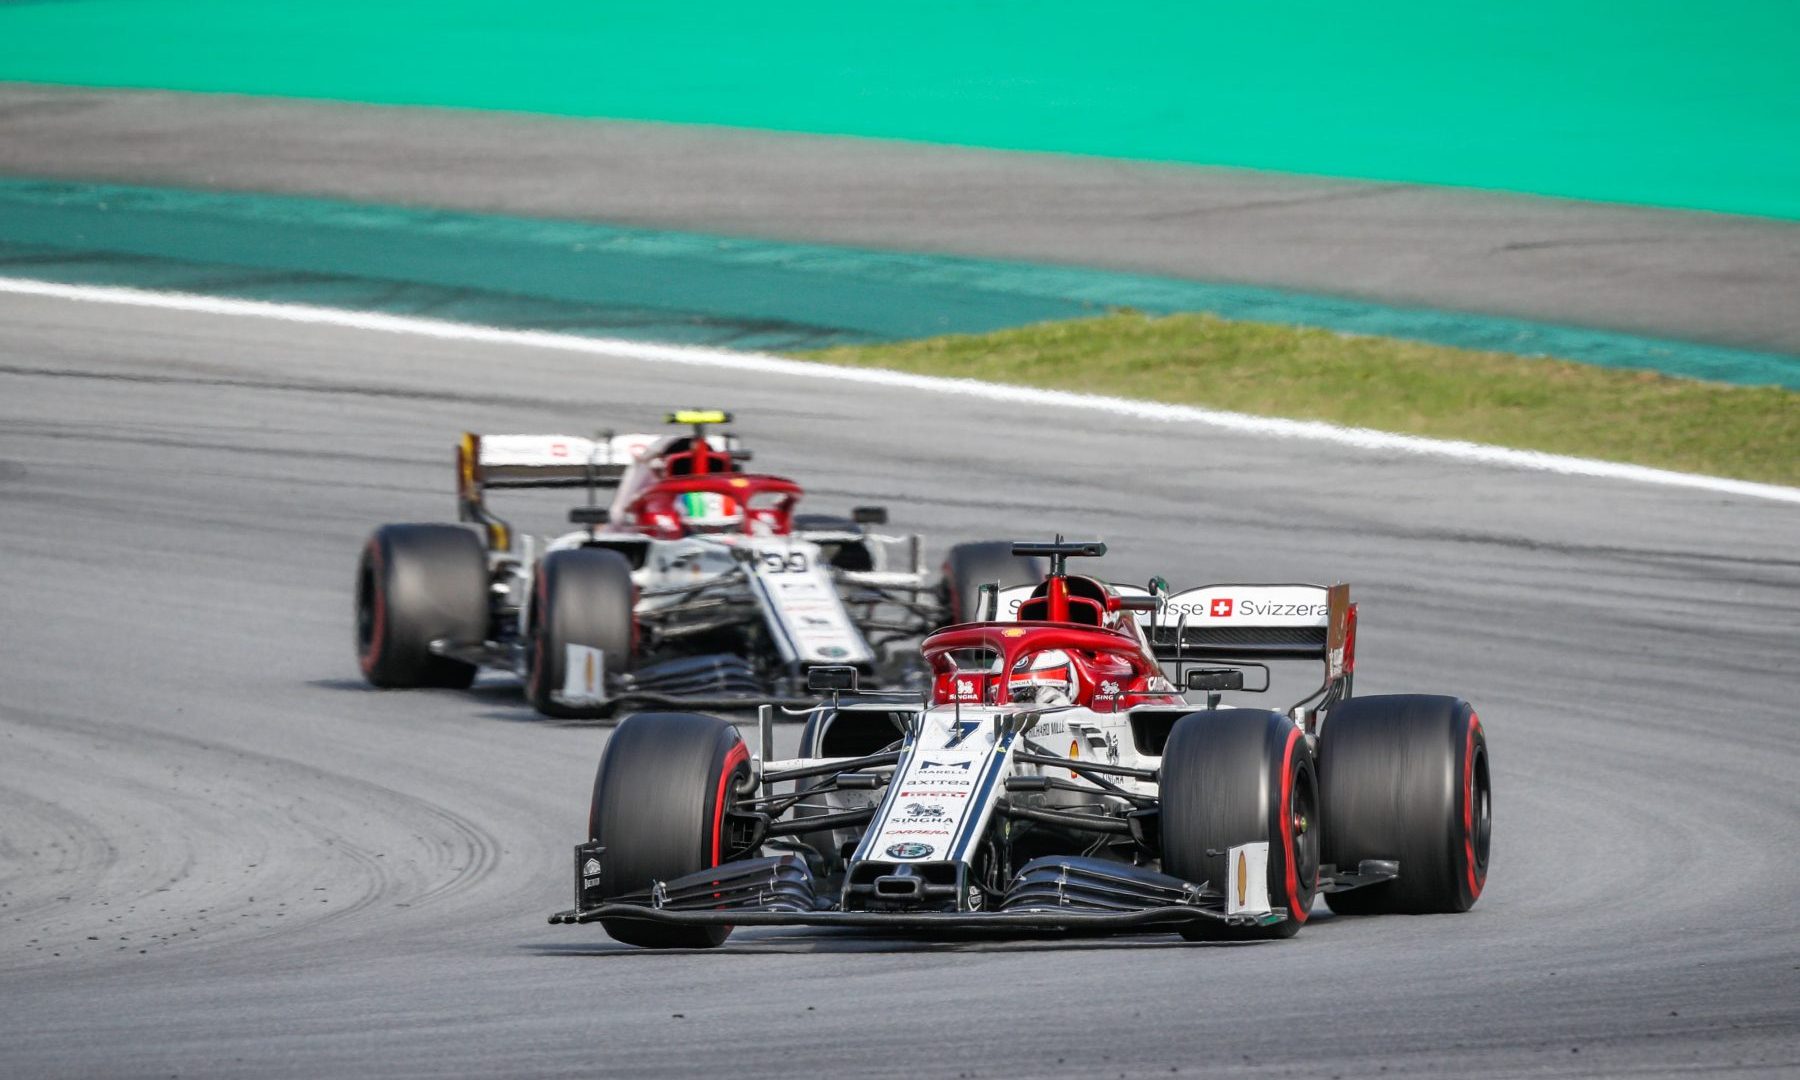 2019 Brazilian Grand Prix, Sunday